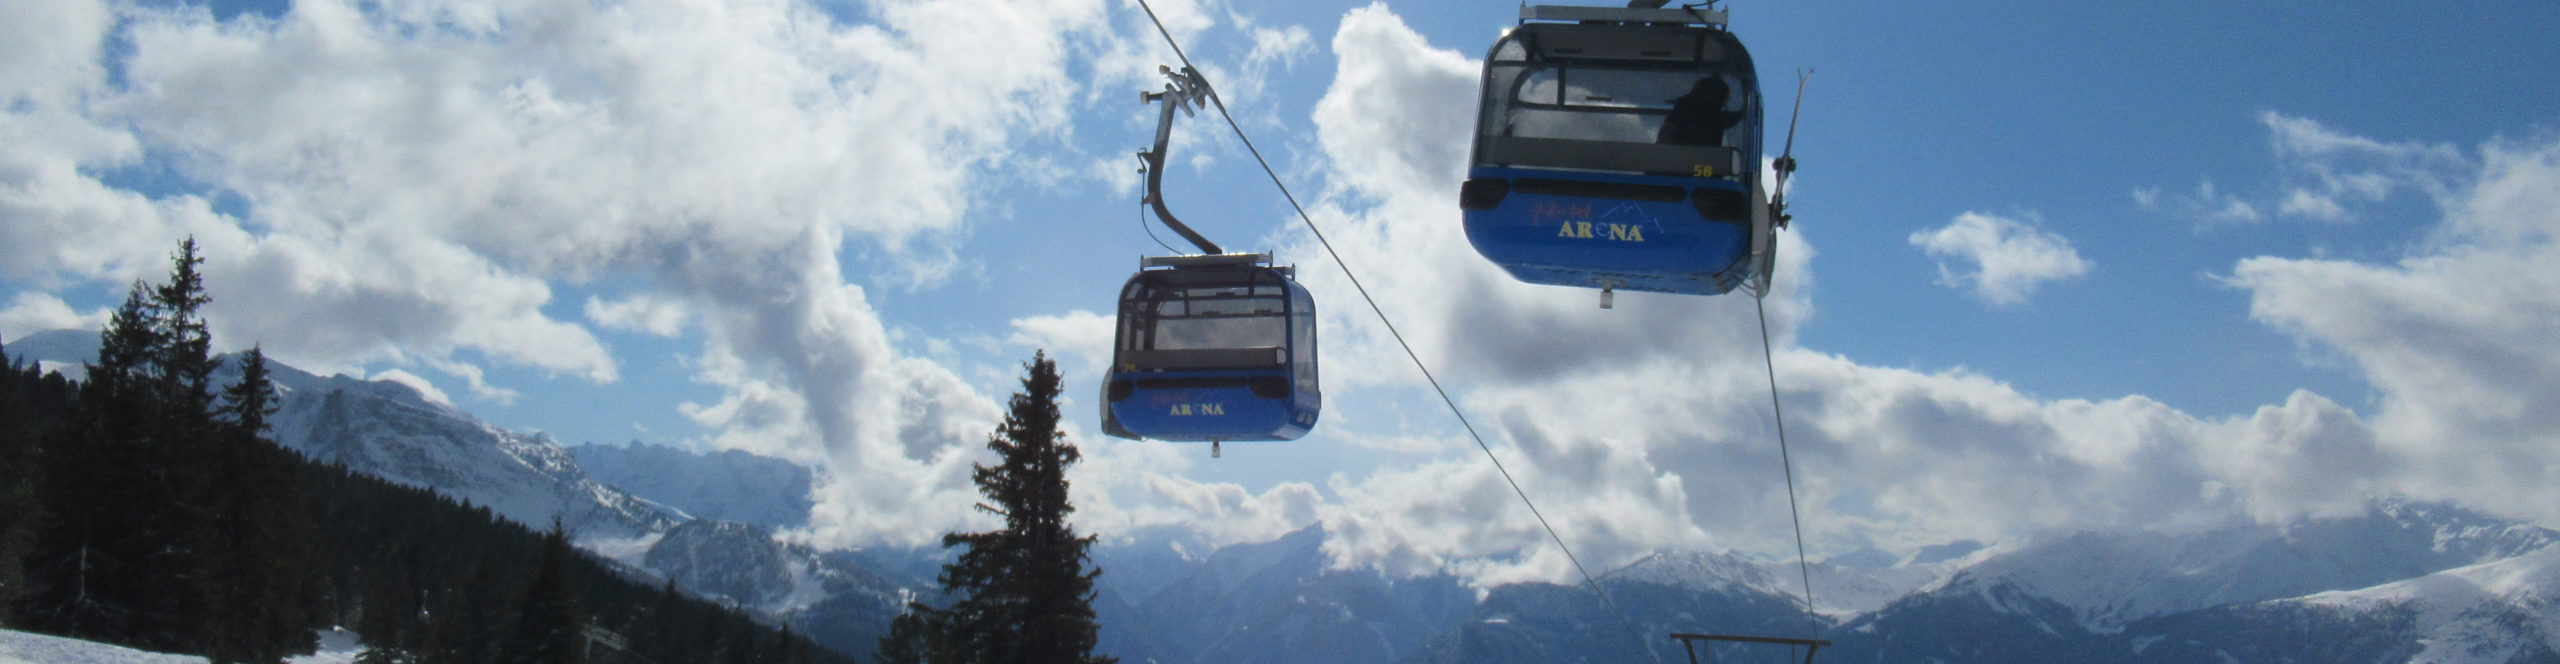 ZILLERTAL – Skiwochenende ab Donnerstag Nachmittag – Hotel in Strass – Skisafari Zell & Kaltenbach 